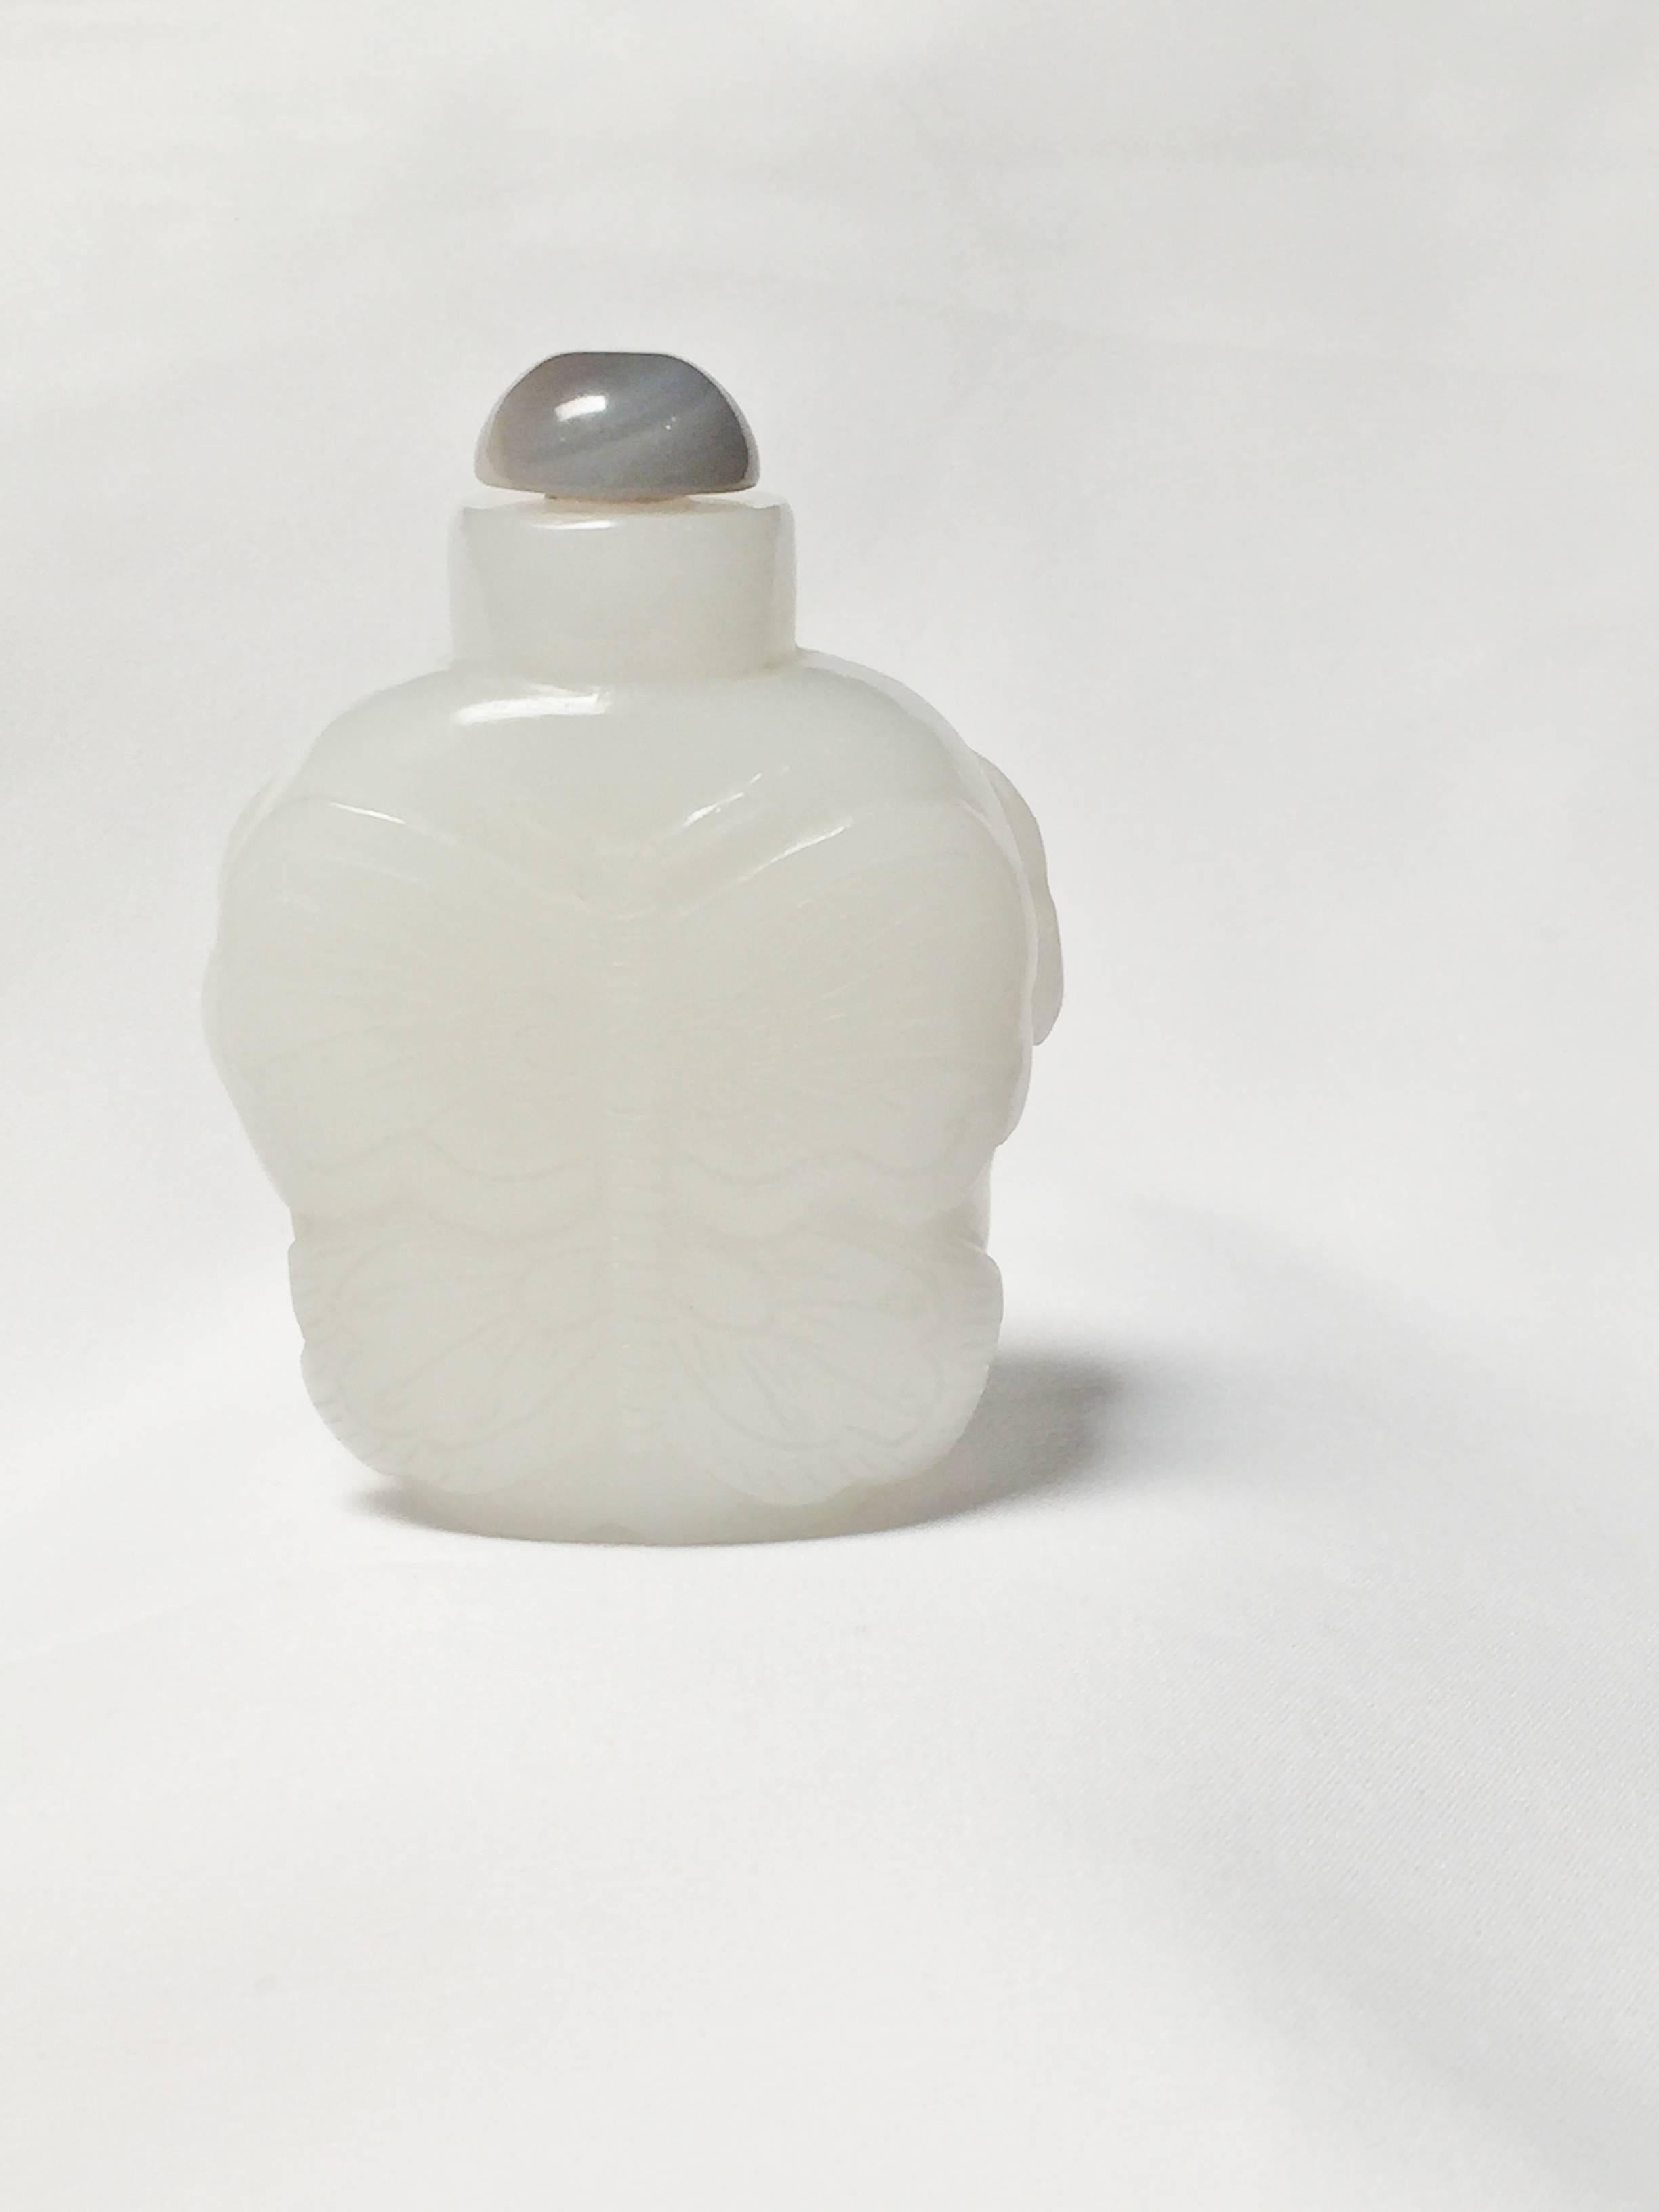 Carnelian White Jade Snuff Bottle, He Tian Region